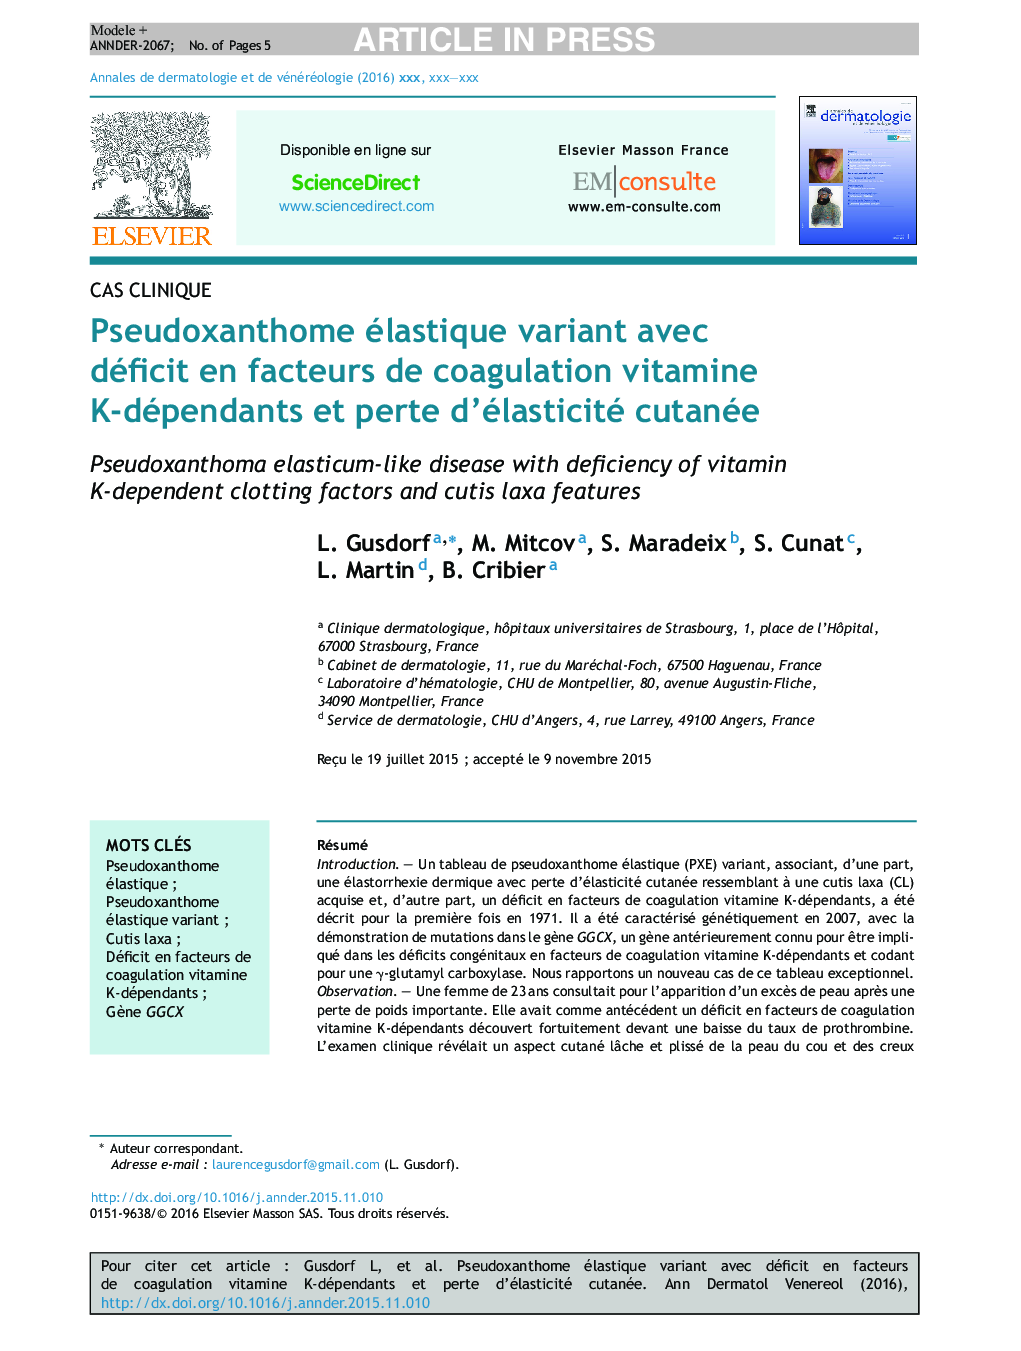 Pseudoxanthome élastique variant avec déficit en facteurs de coagulation vitamine K-dépendants et perte d'élasticité cutanée